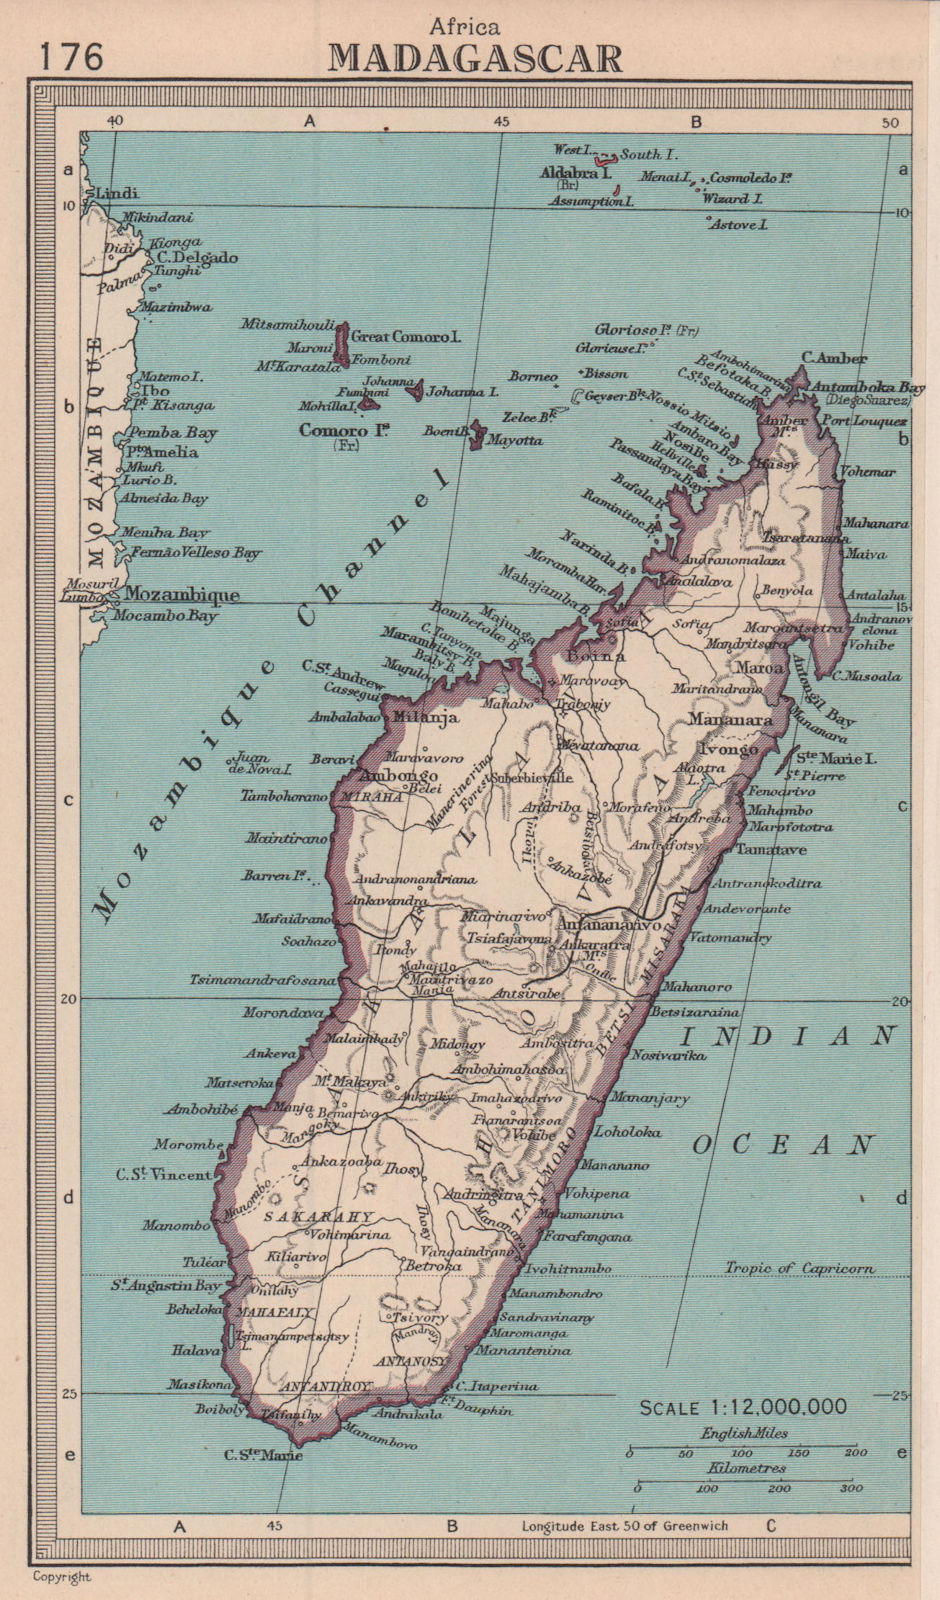 Madagascar. BARTHOLOMEW 1949 old vintage map plan chart